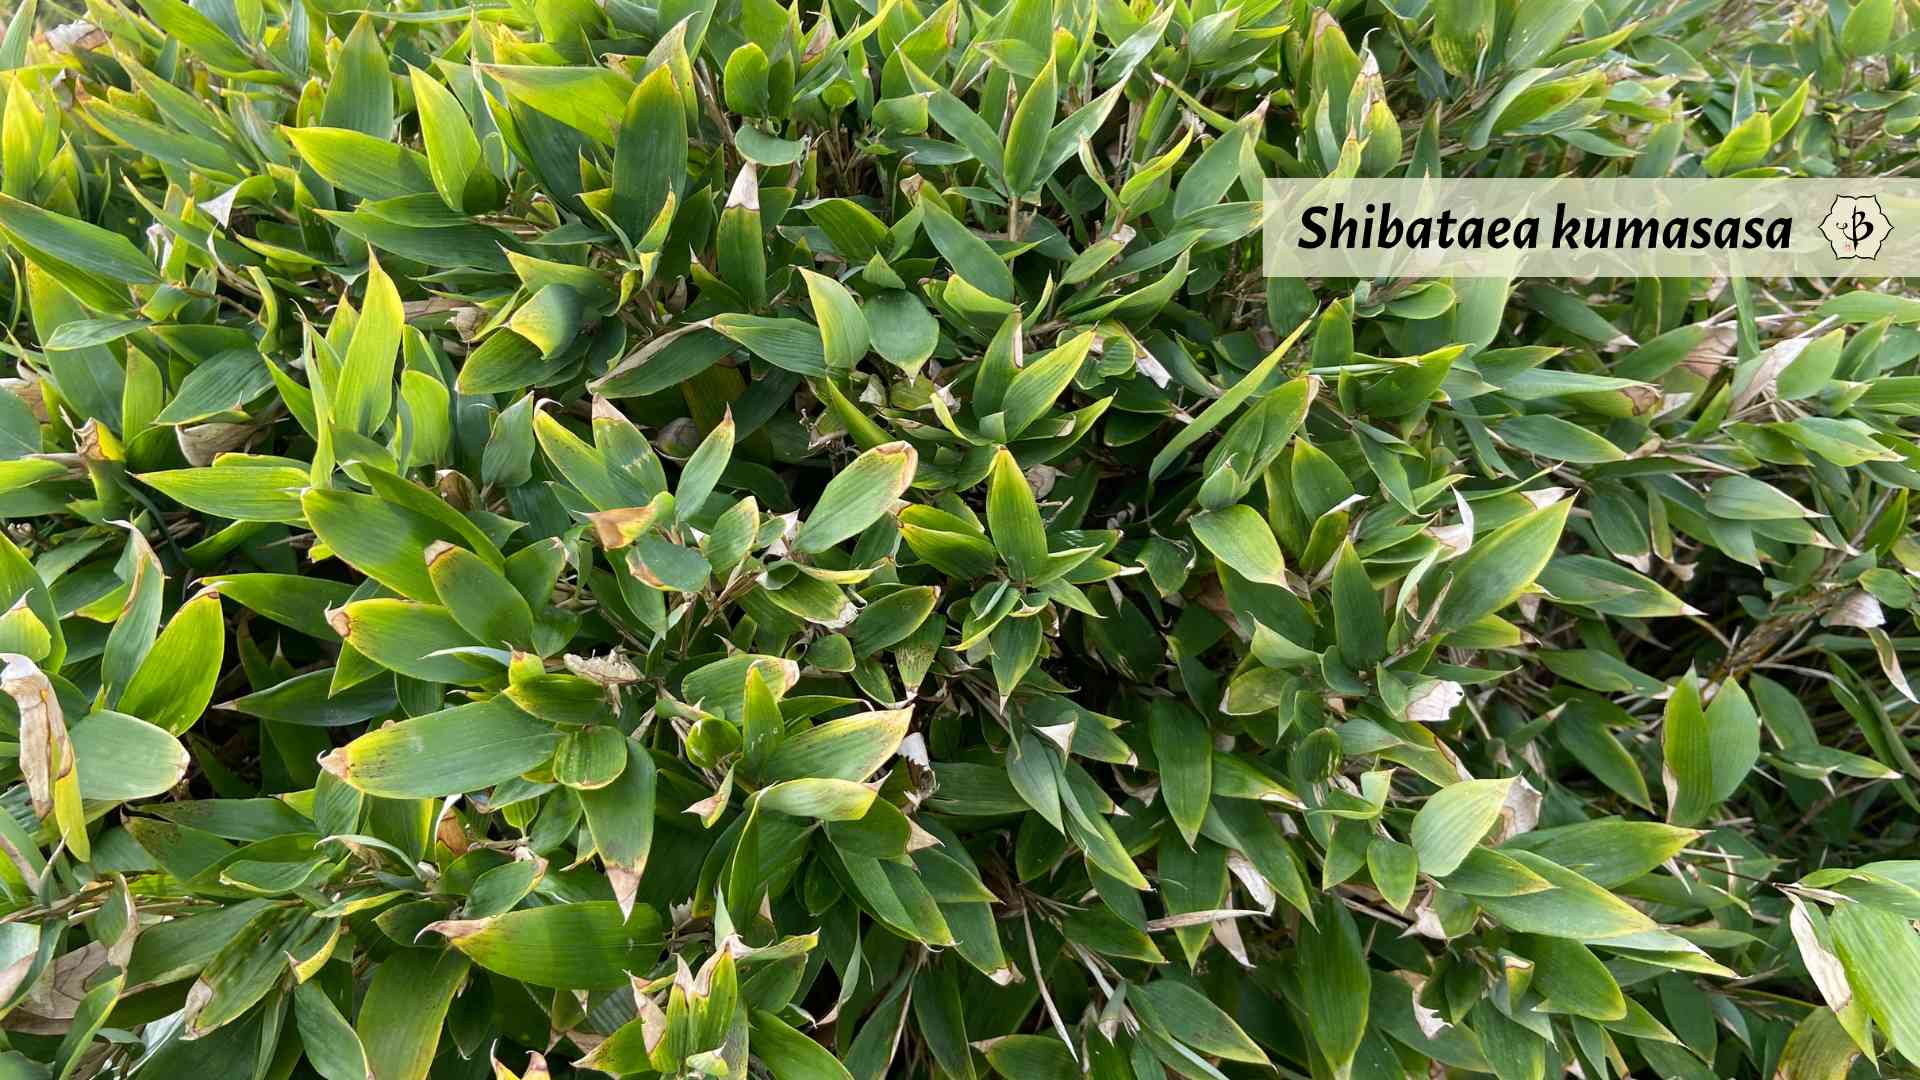 Shibataea kumasaca dwarf bamboo